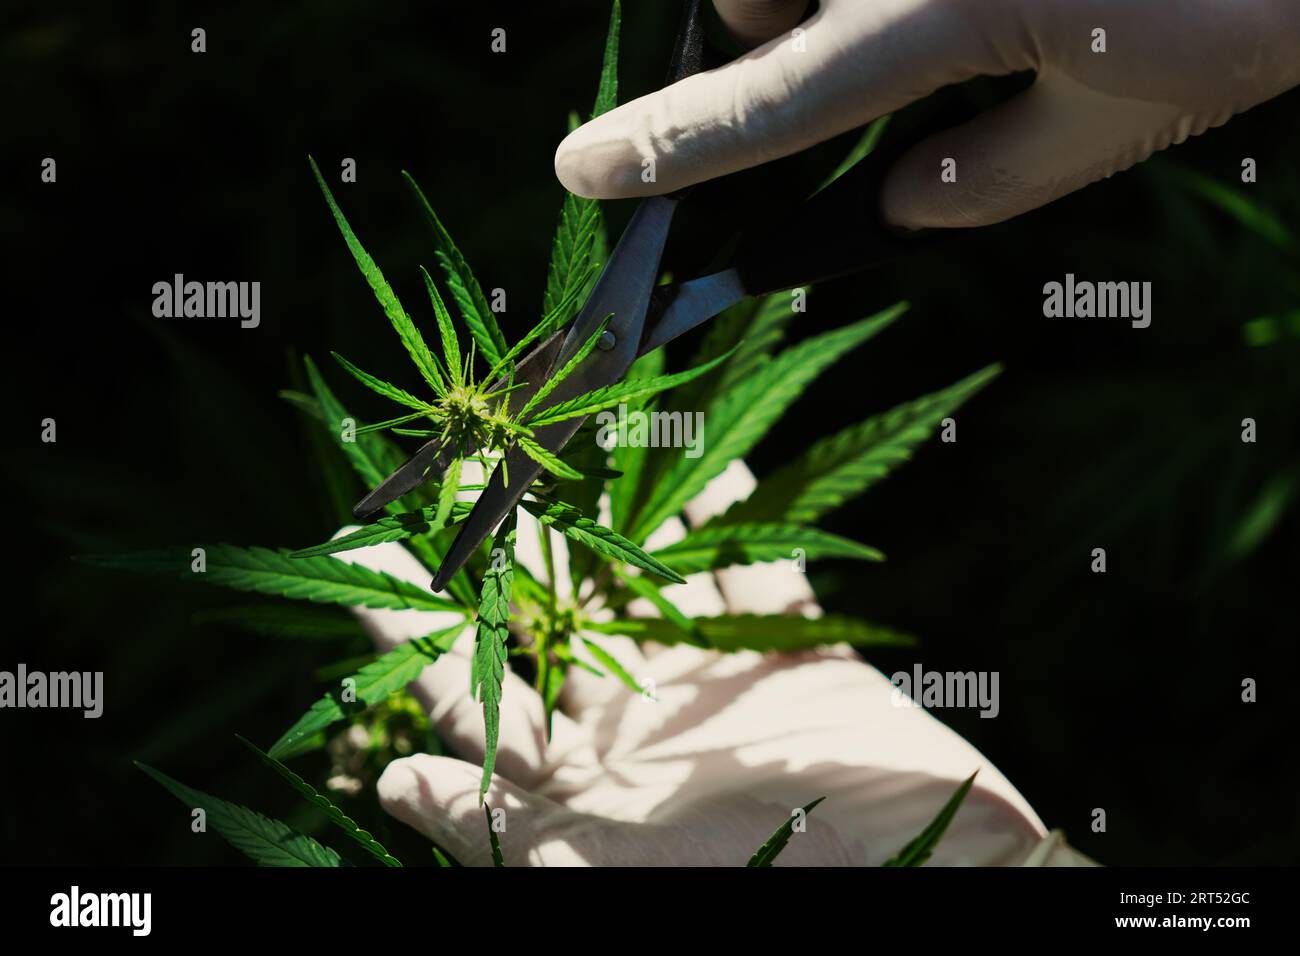 Wissenschaftler Hand mit medizinischem Gummihandschuh berührt erfreuliches Cannabisblatt in heilender Indoor Cannabis Farm. Alternative medizinische Behandlung durch Cannabis Stockfoto